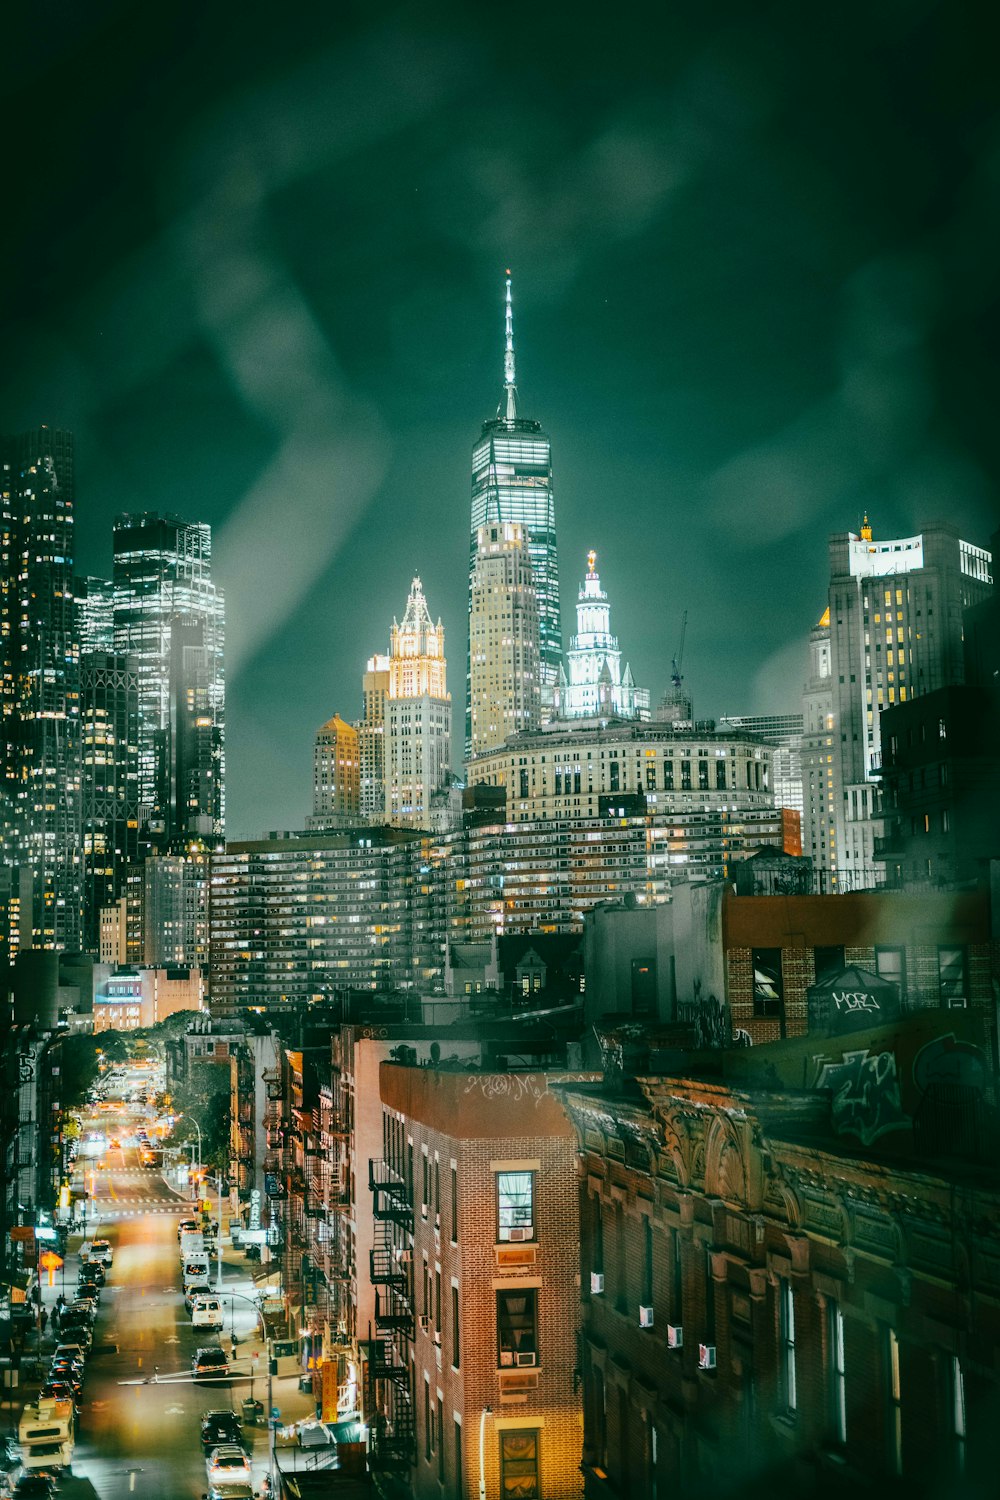 Una vista de una ciudad por la noche desde lo alto de un edificio